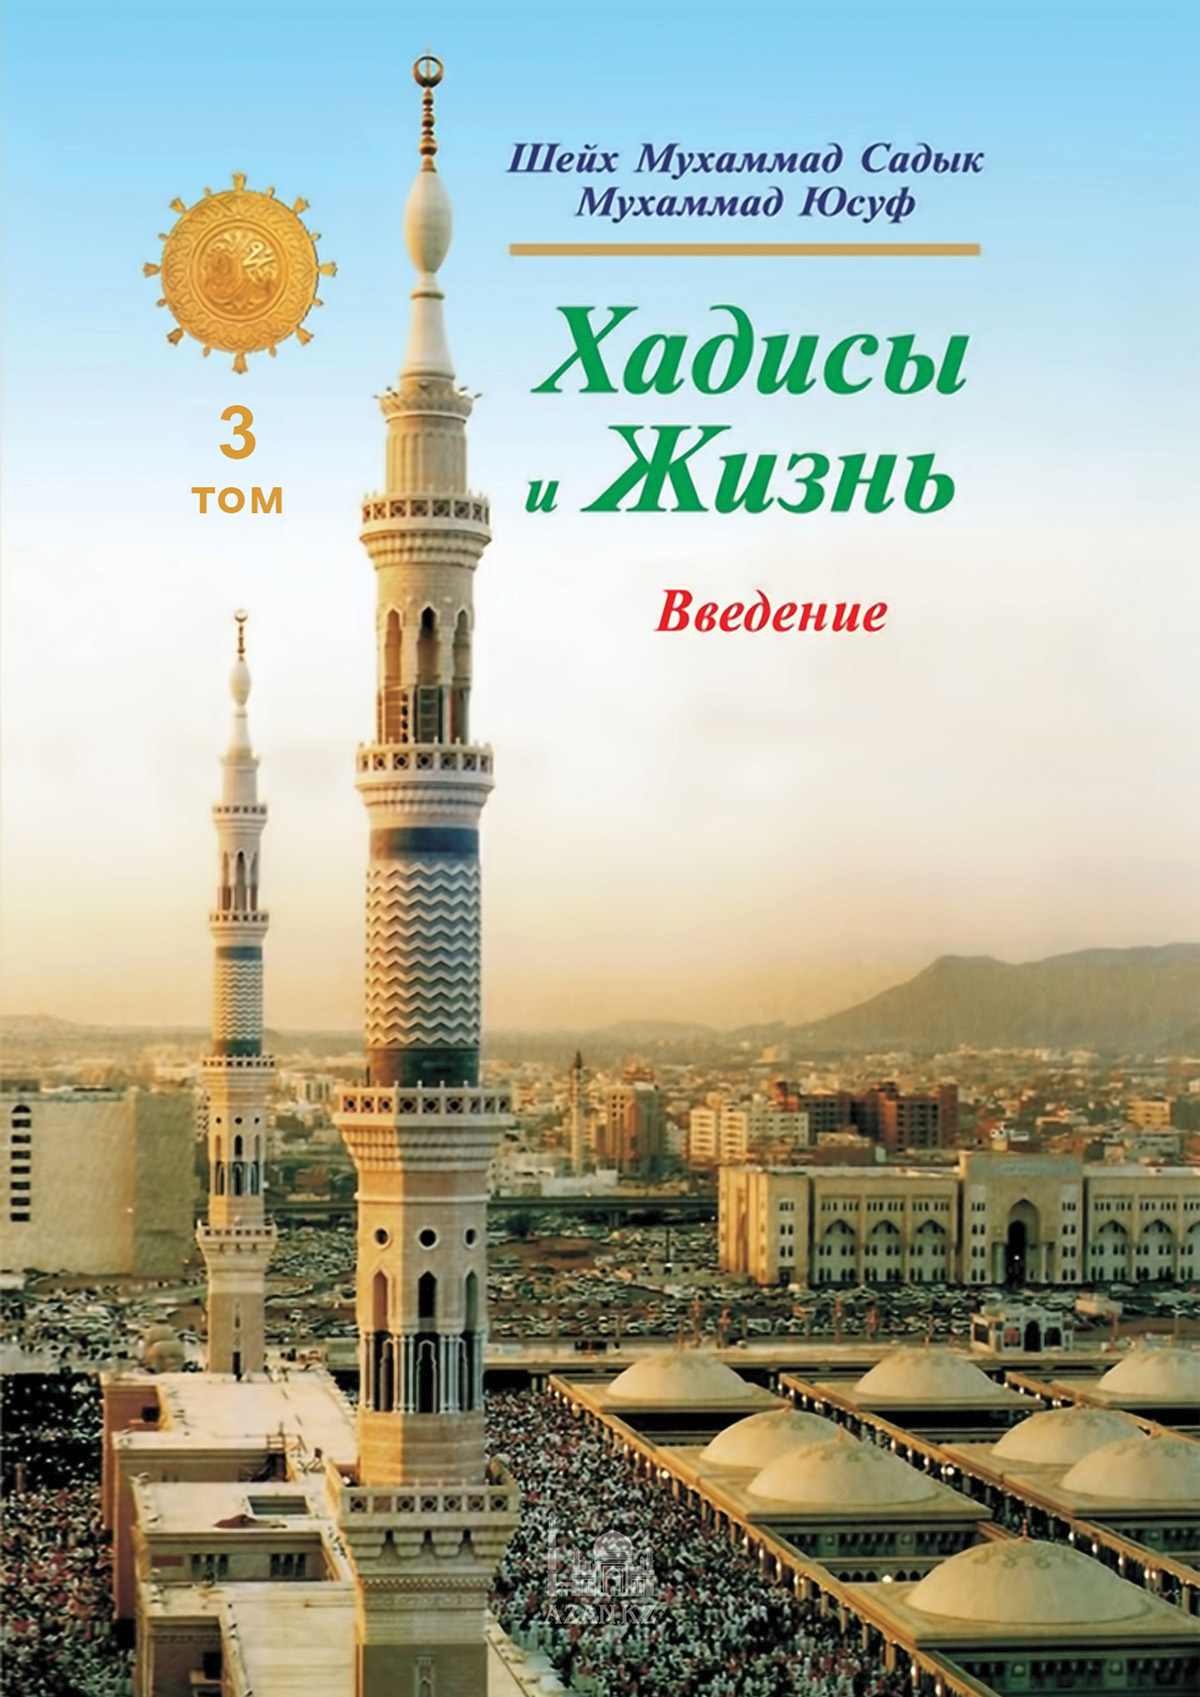 Хадисы и Жизнь: 3 том. Книга намерения, ихласа и знания